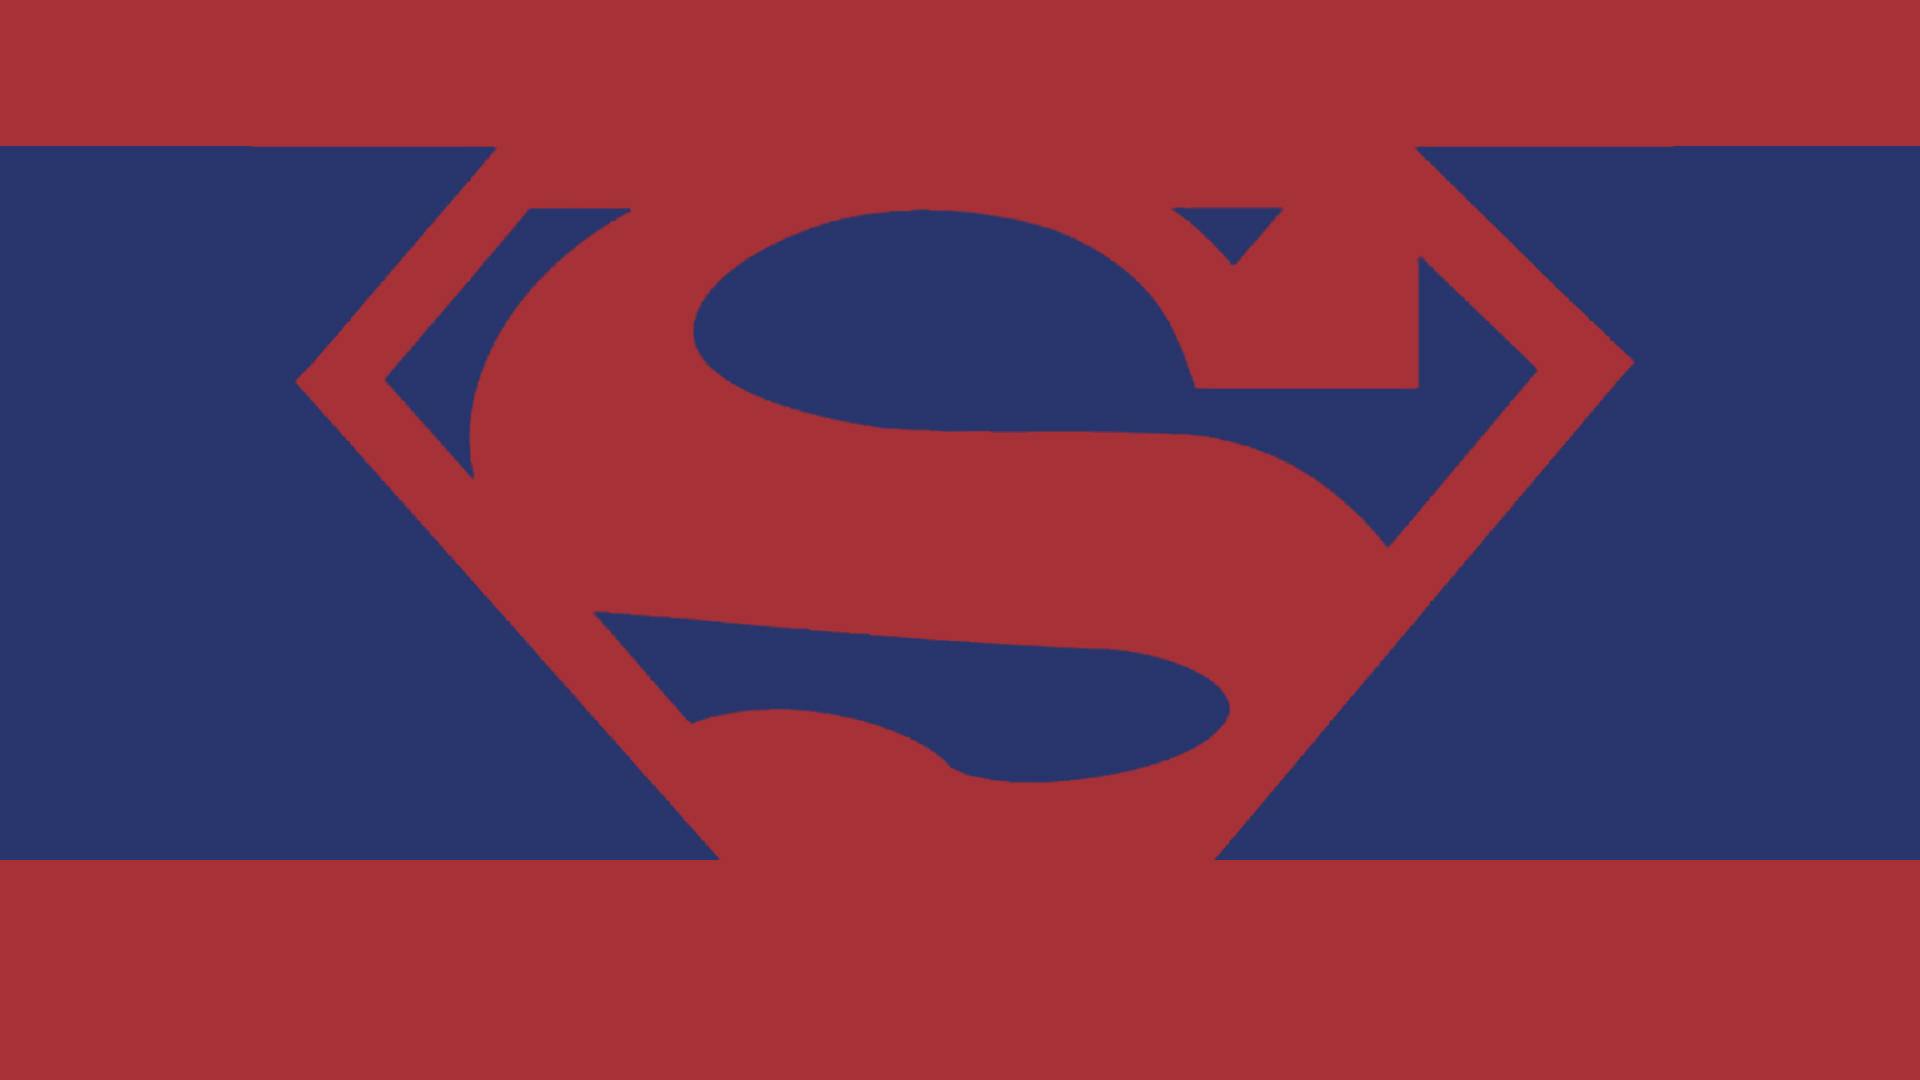 Blekblåoch Röd Superman-logotyp. Wallpaper